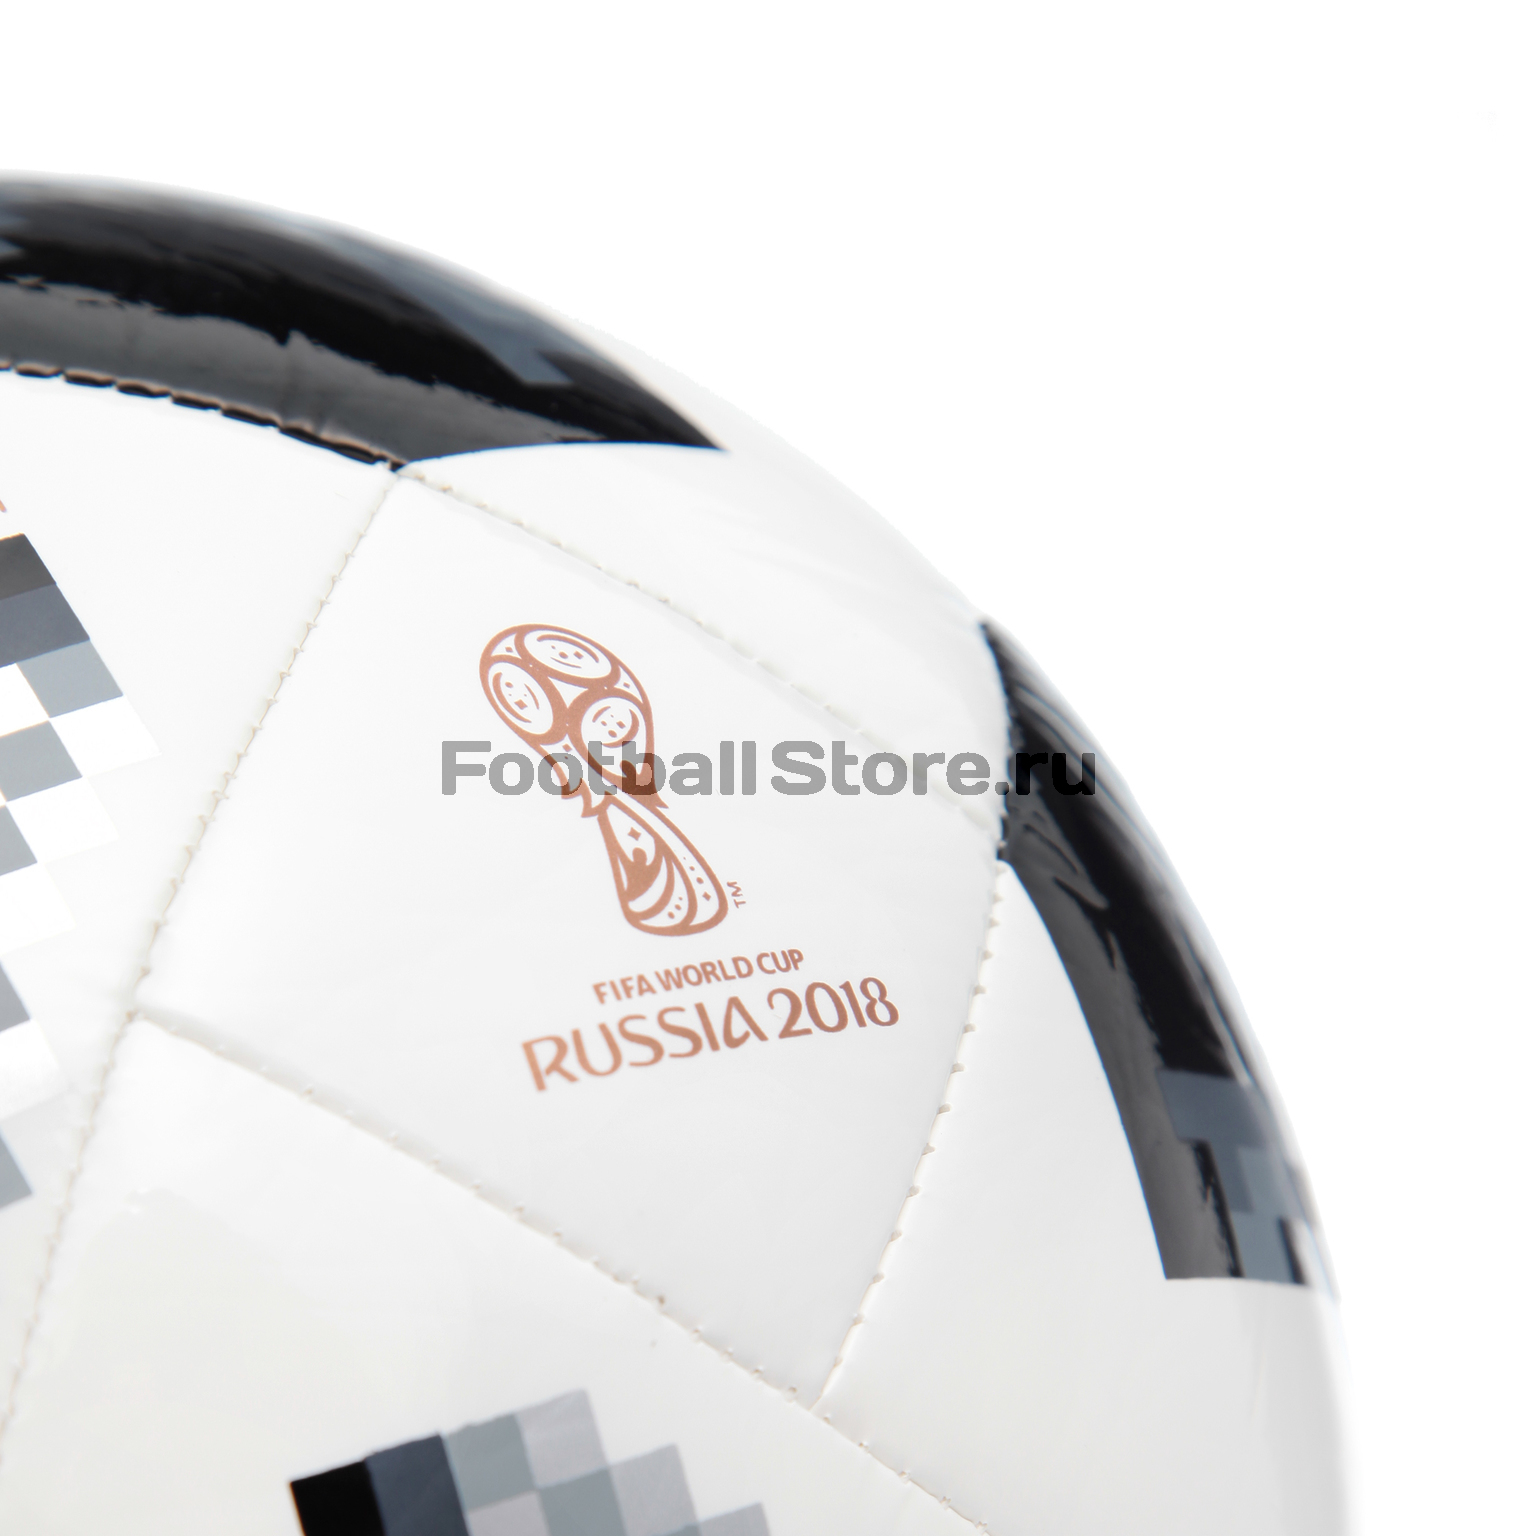 Мяч футзальный Adidas Telstar World Cup S5X5 CE8144